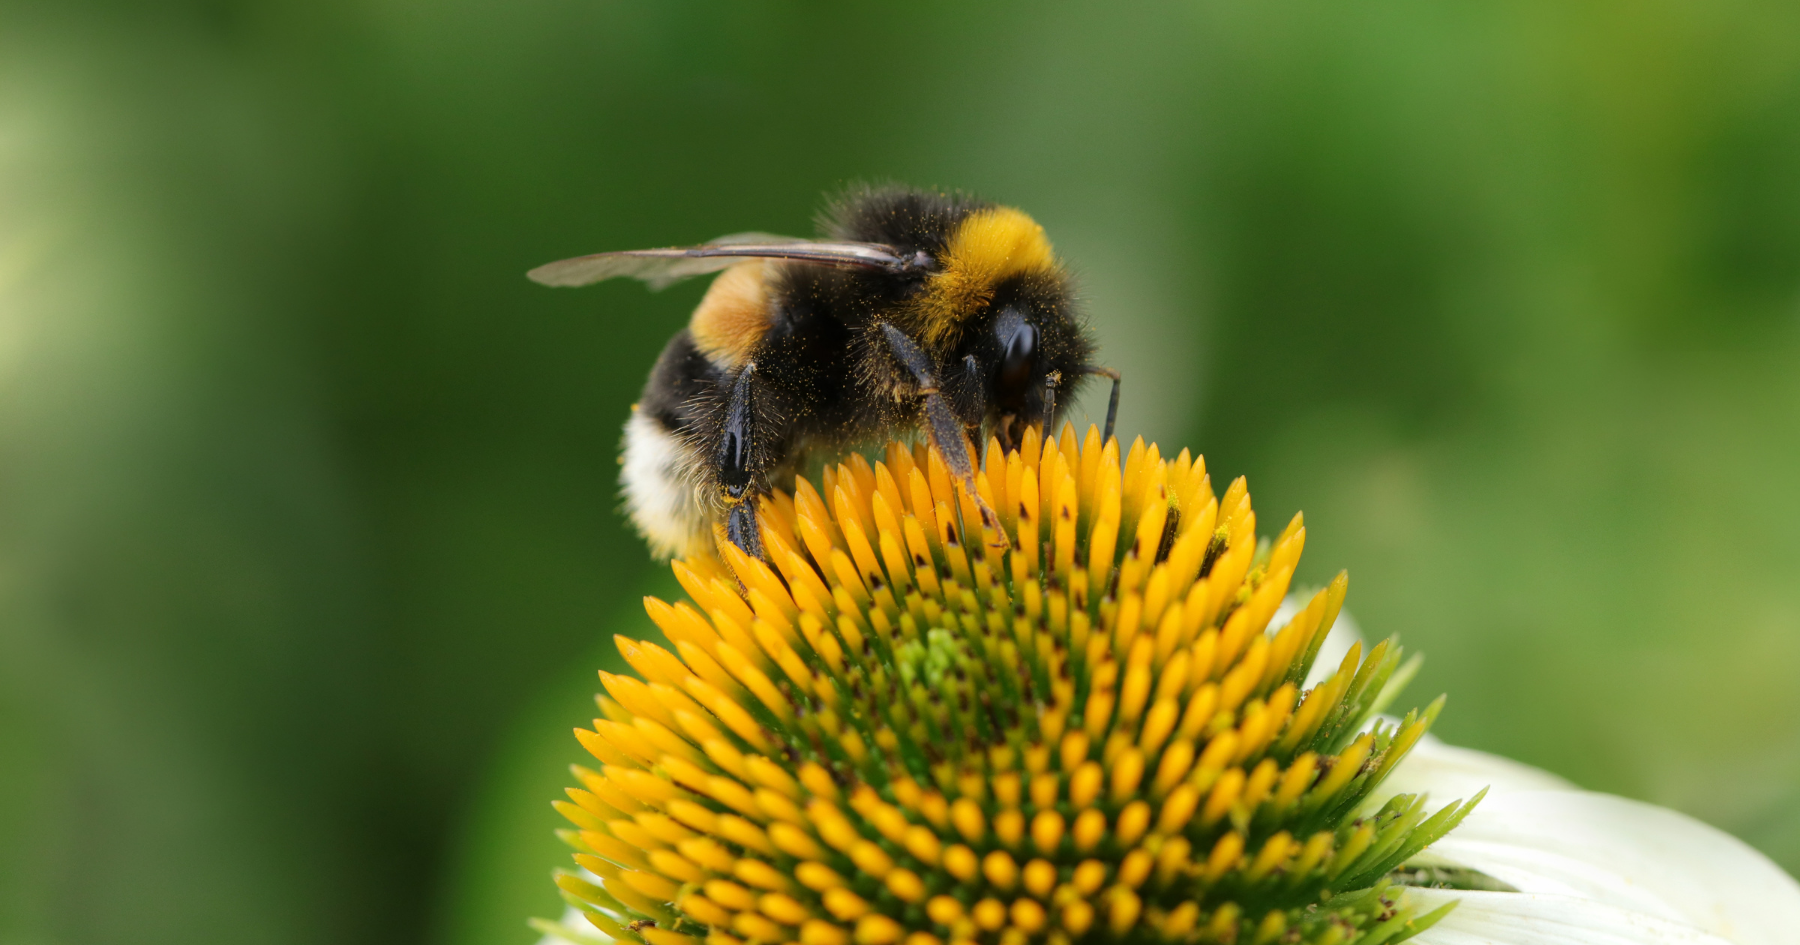 bumblebee on coneflower